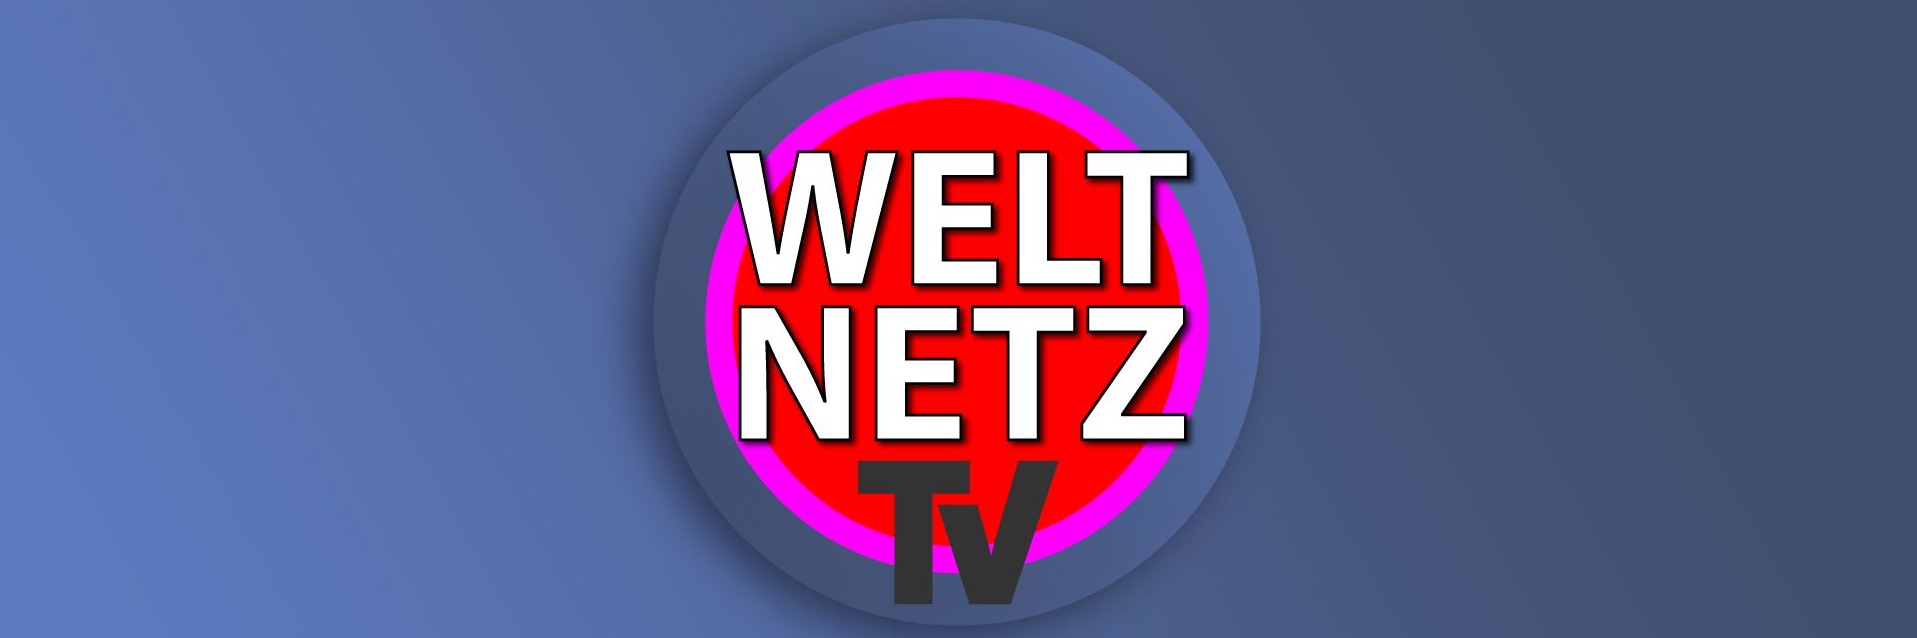 weltnetz logo jpg